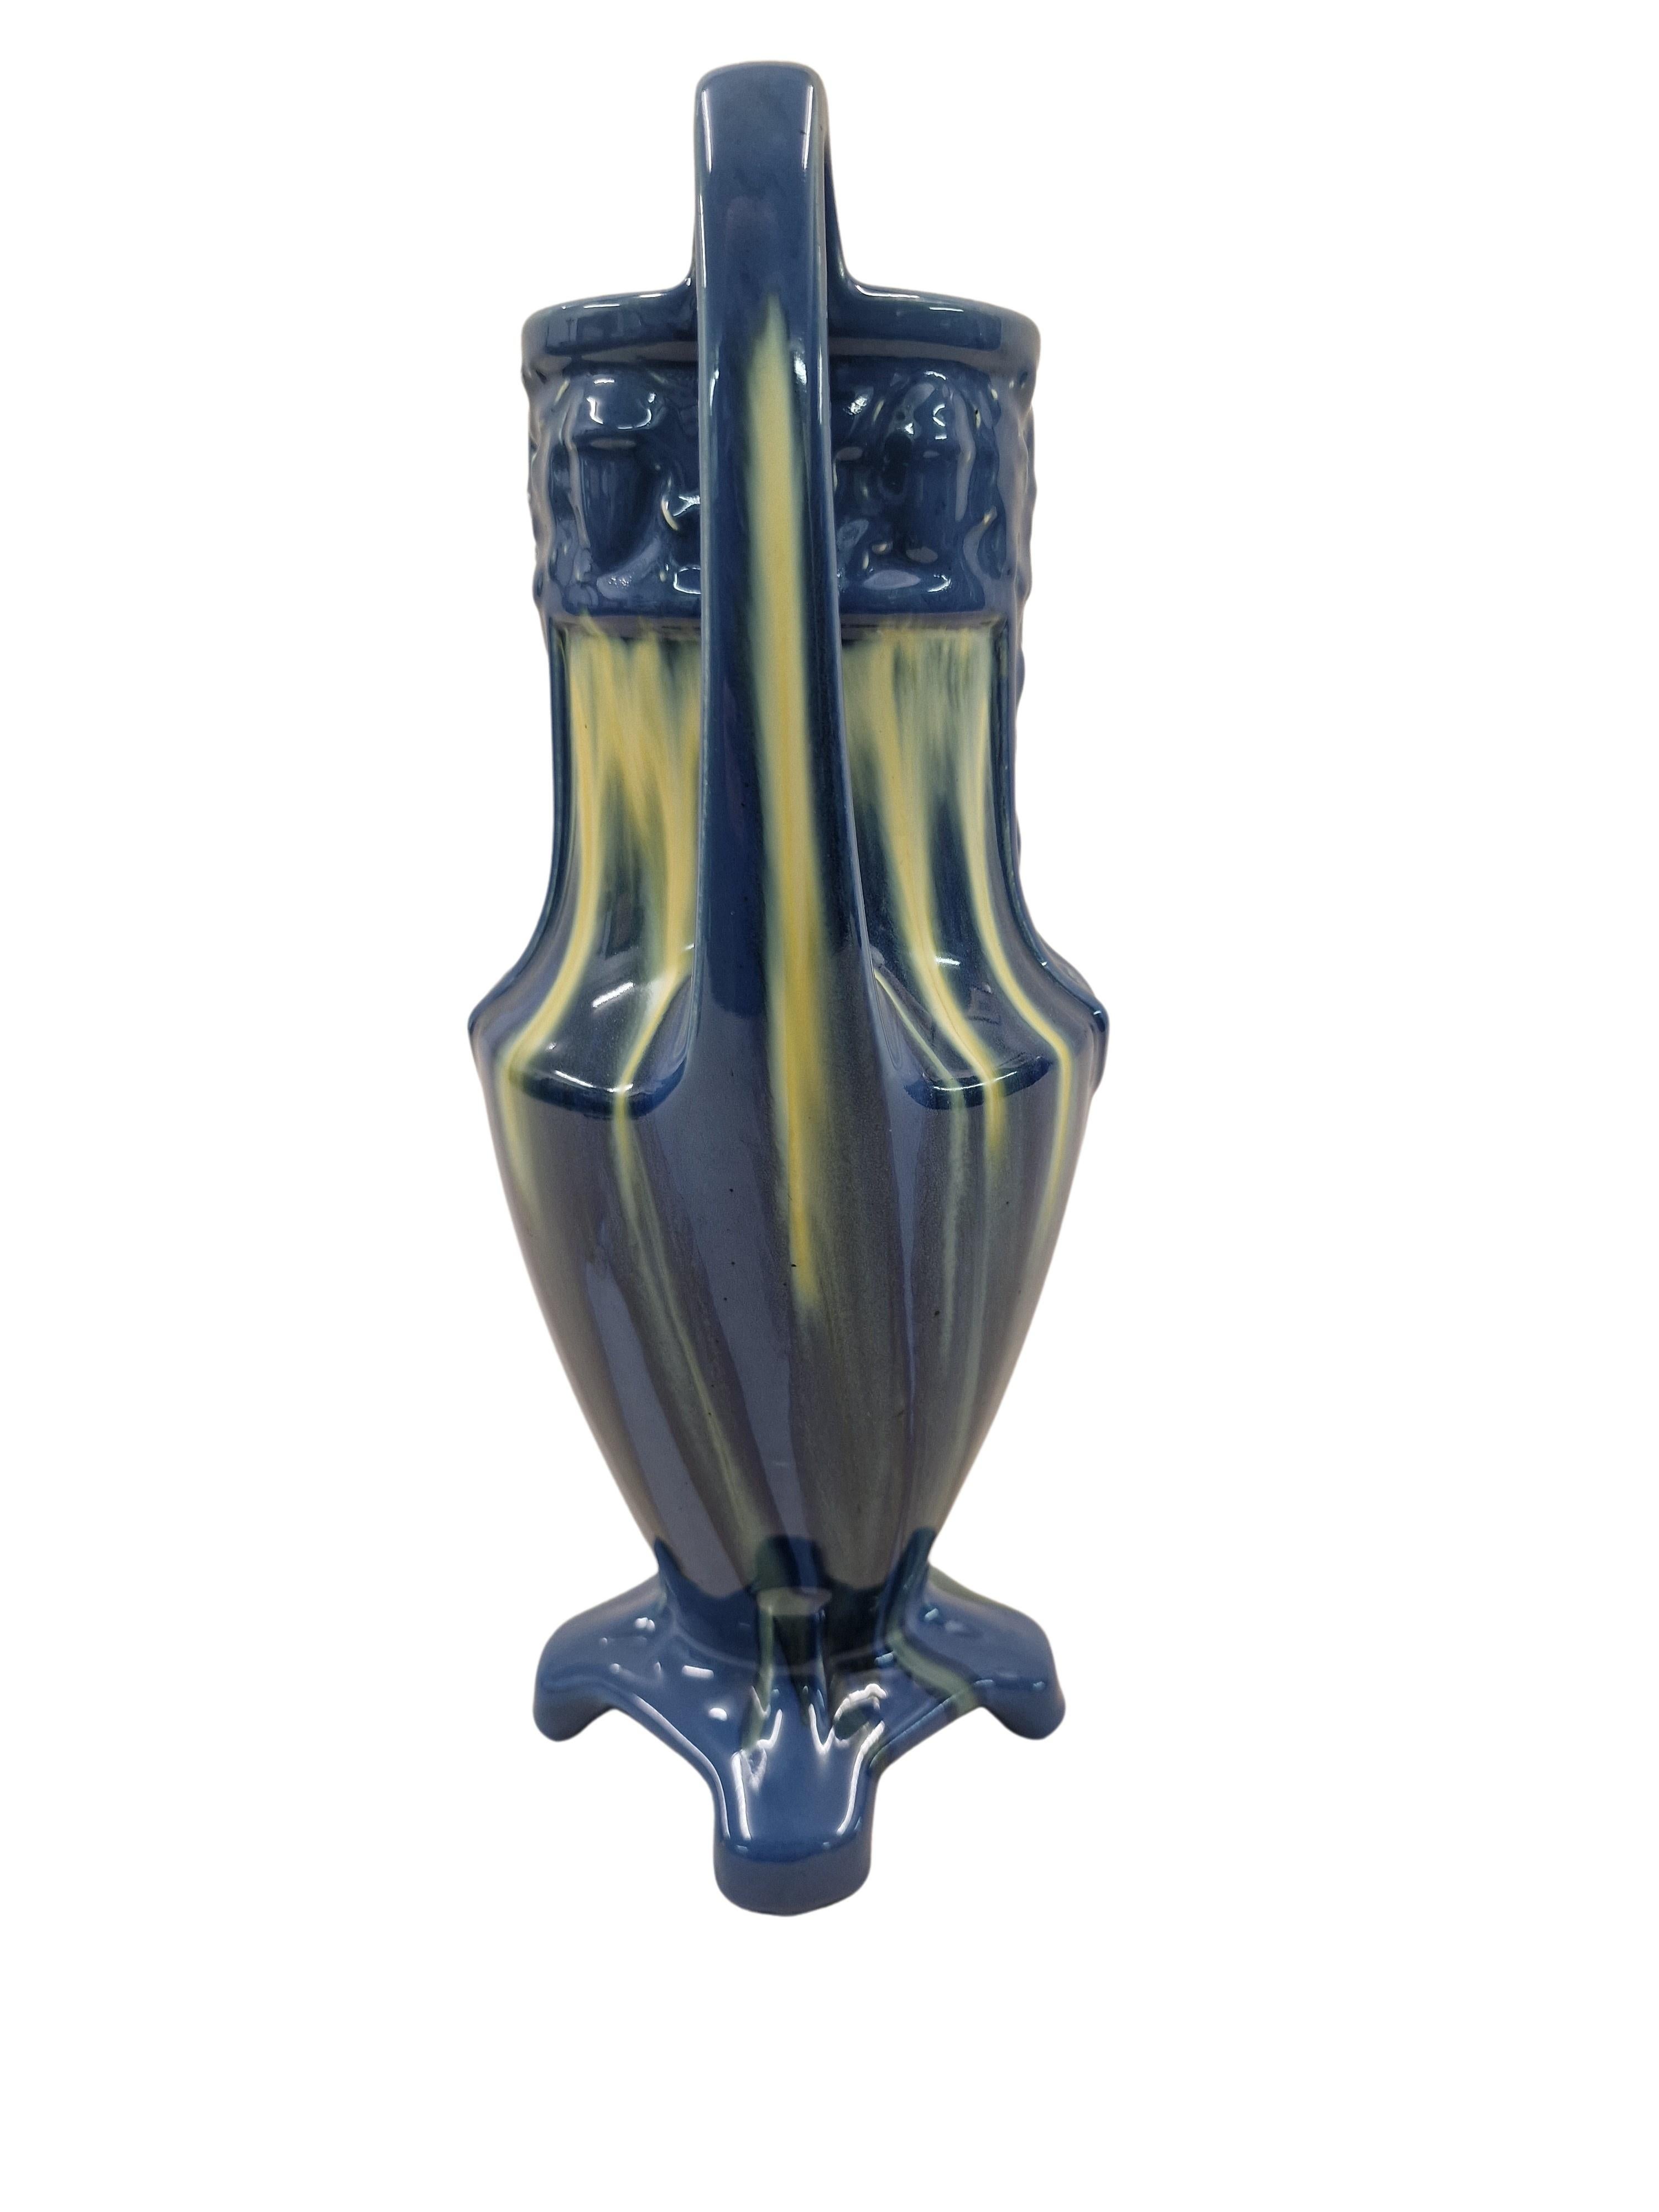 Vase très décoratif du début de la période art déco, fabriqué en France. 

Cet objet a une forme qui ressemble aux anciennes amphores grecques, mais il est doté d'un support à quatre passes pour assurer sa stabilité, dans la zone supérieure il y a